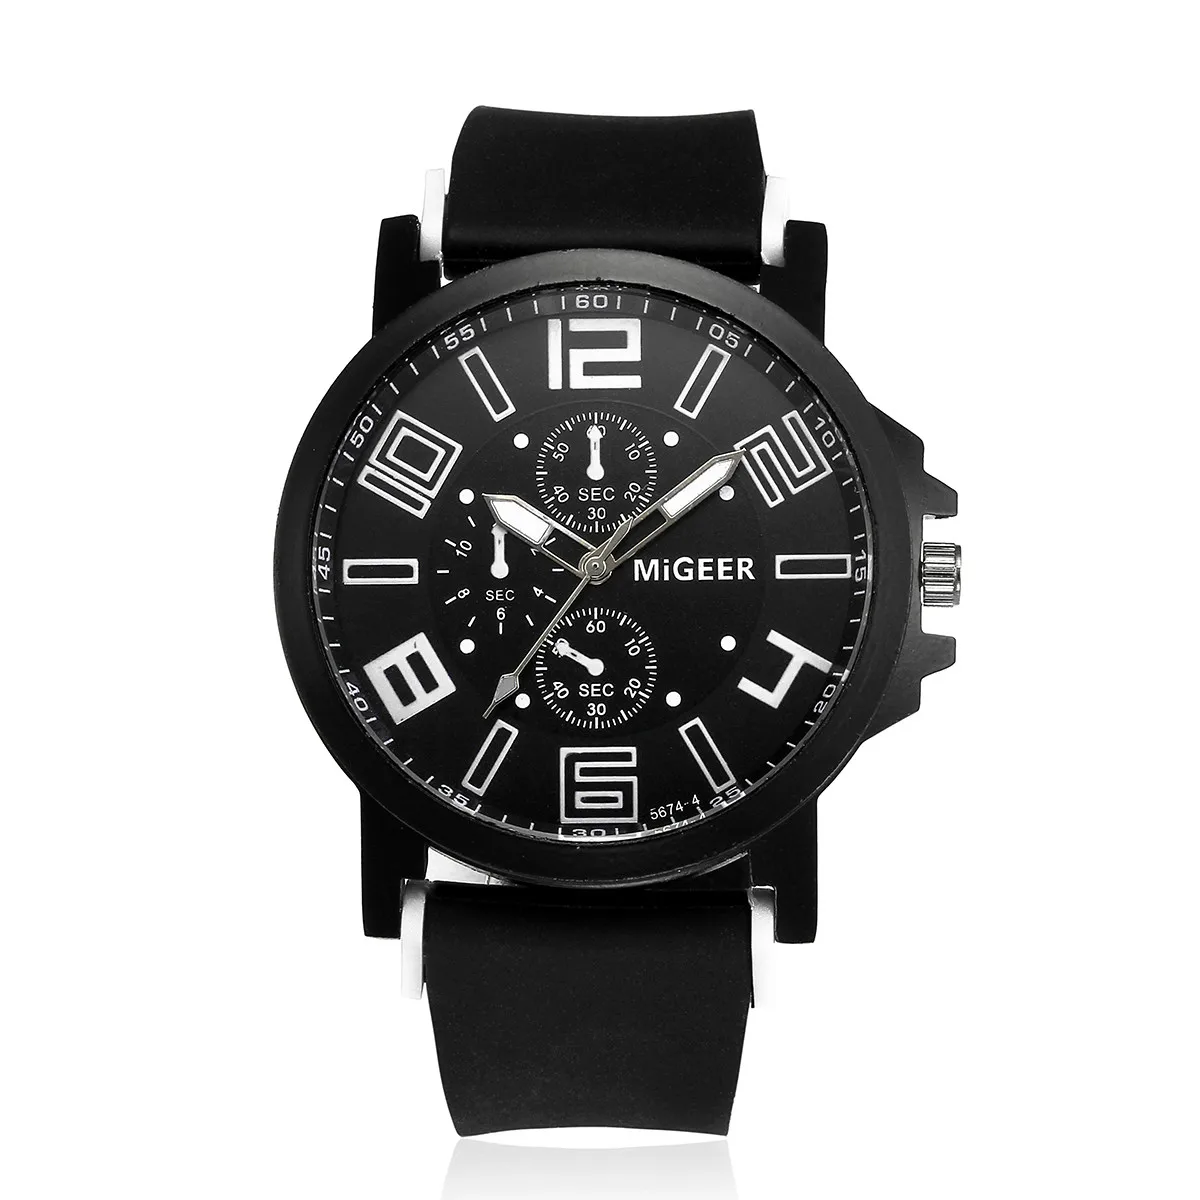 MIGEER мужские модные спортивные часы с силиконовым ремешком, крутые кварцевые часы, наручные аналоговые часы, большие часы из нержавеющей стали, военные часы